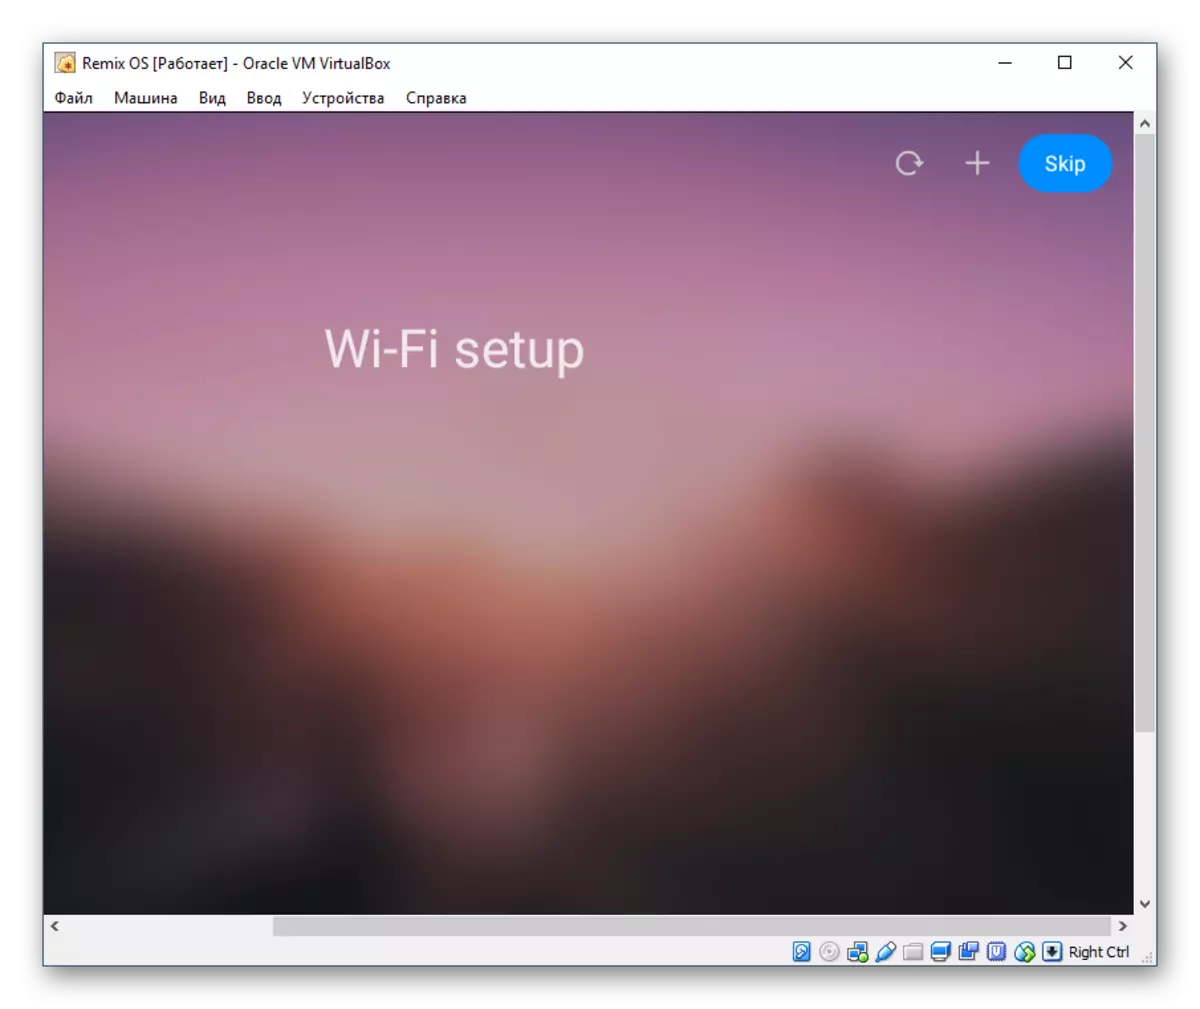 Pagpahimutang sa Wi-Fi Remix OS sa Virtuxx